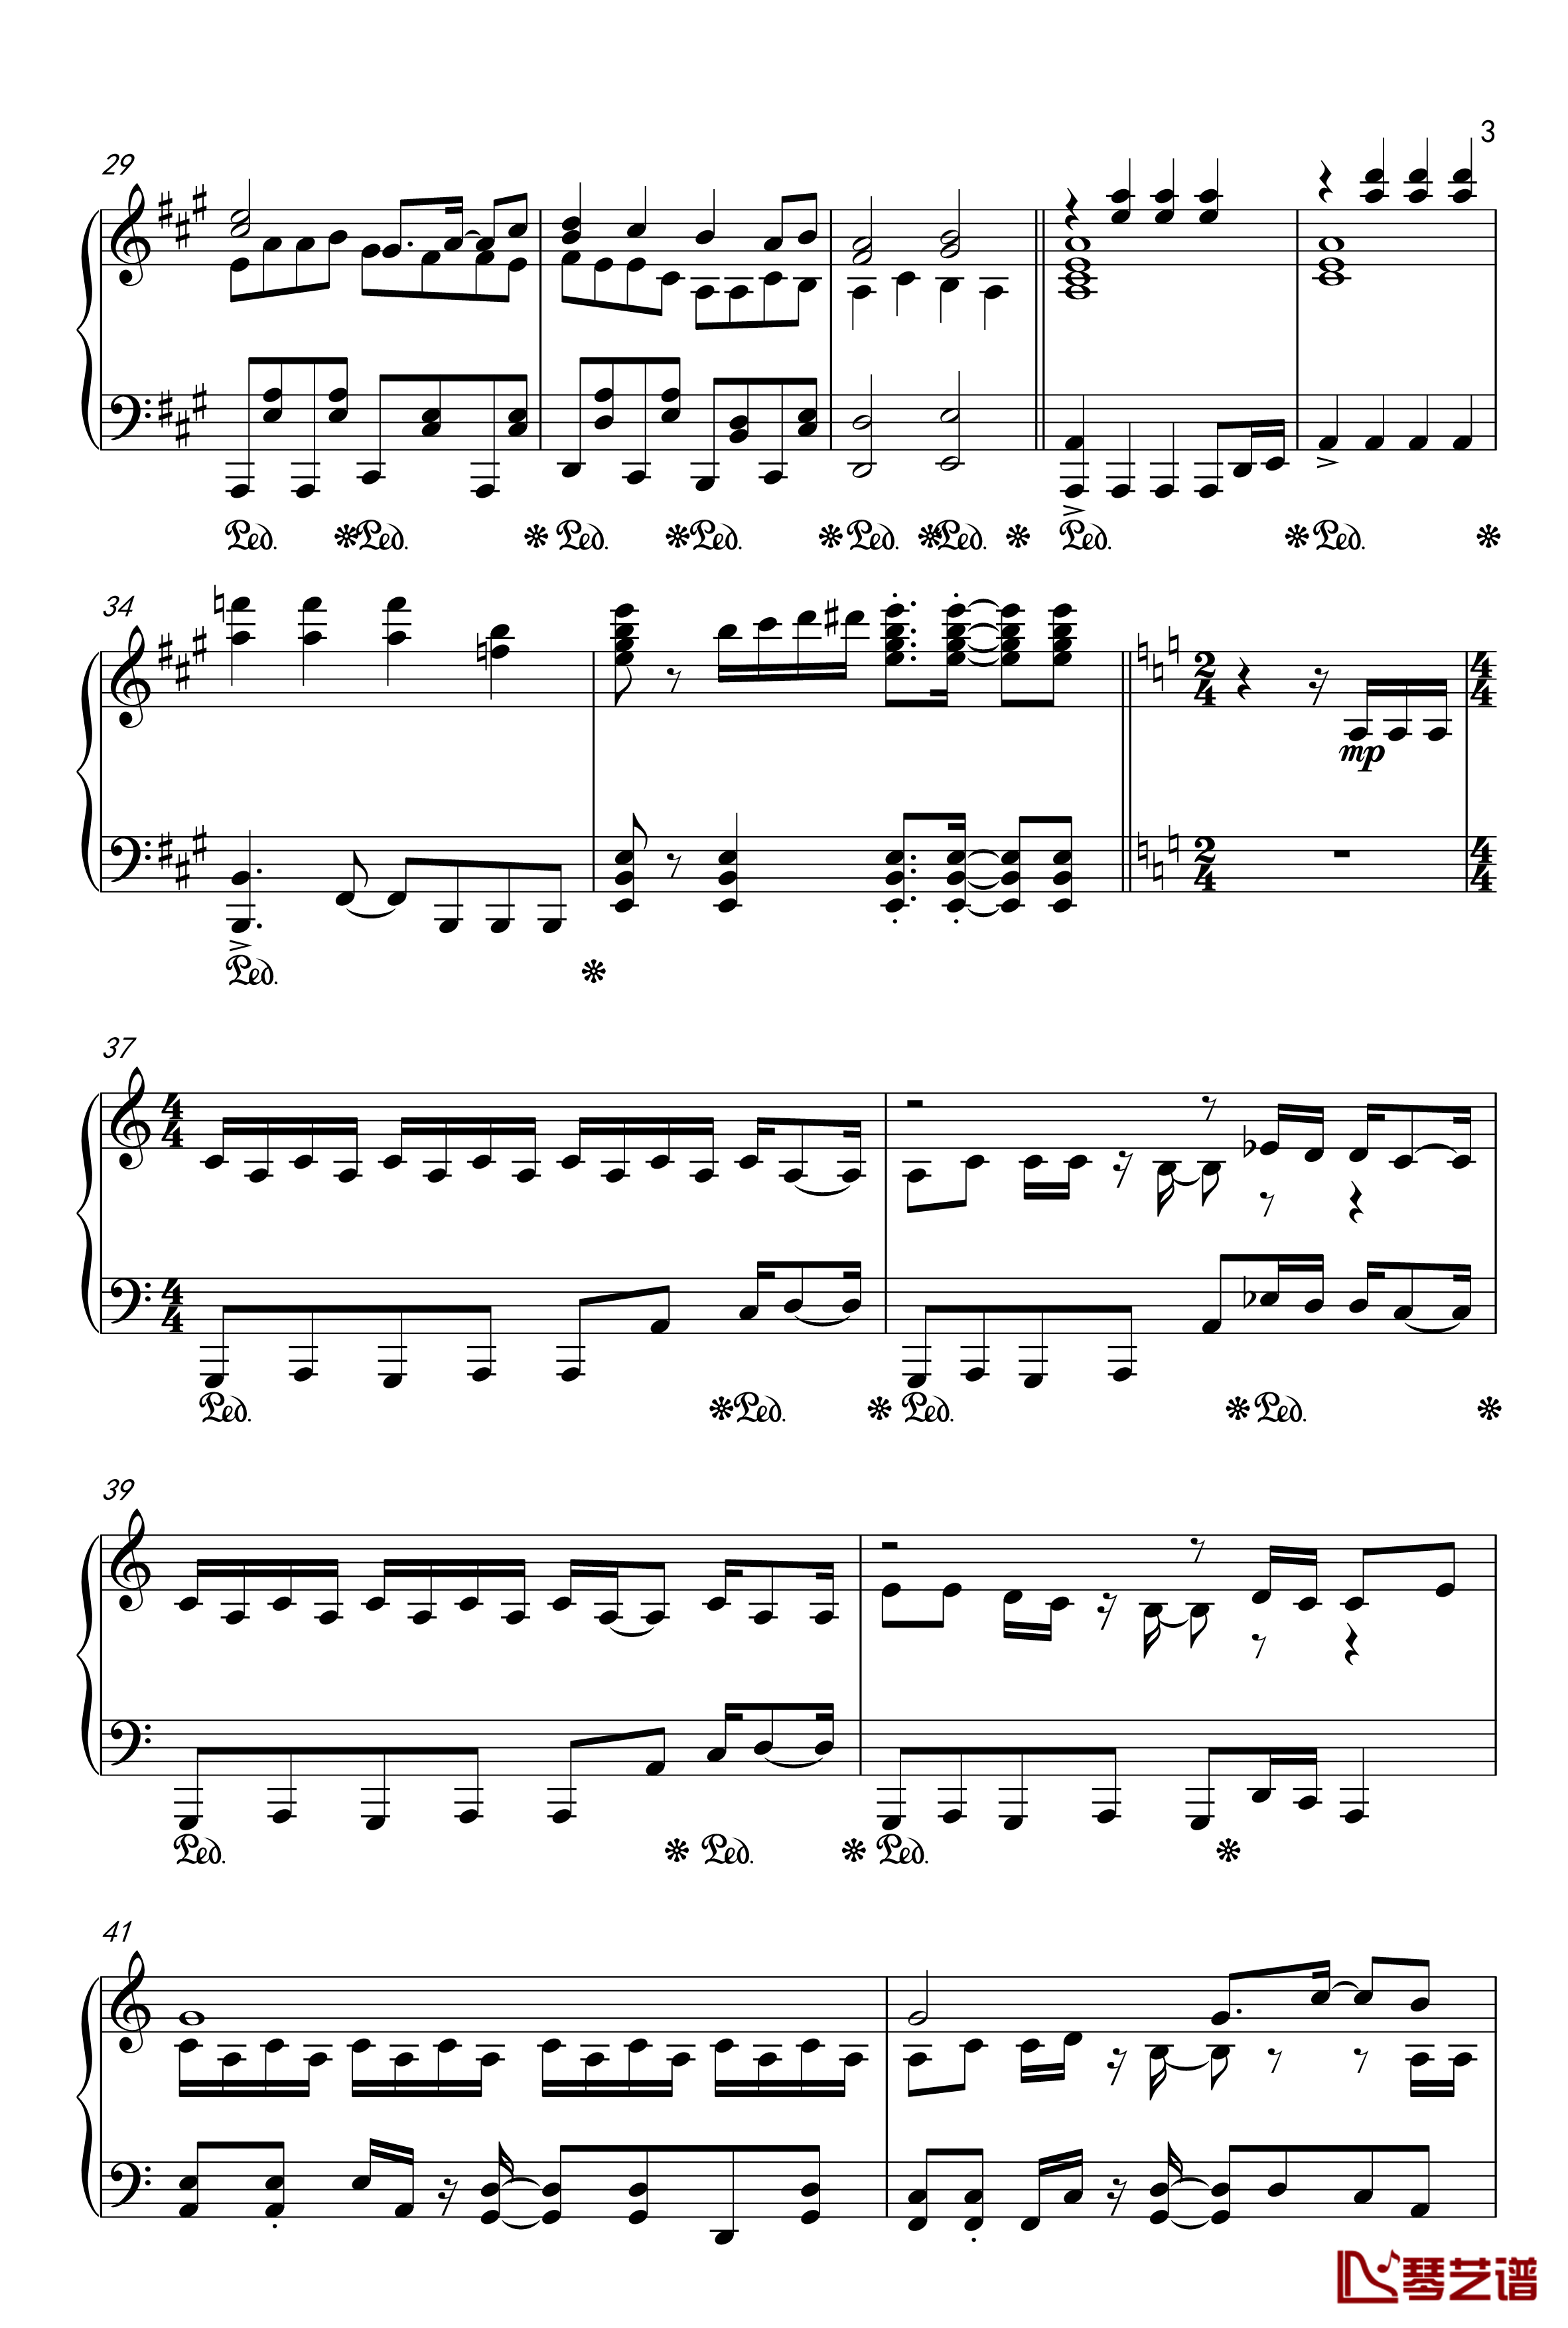 目标是神奇宝贝大师钢琴谱-20周年纪念版3